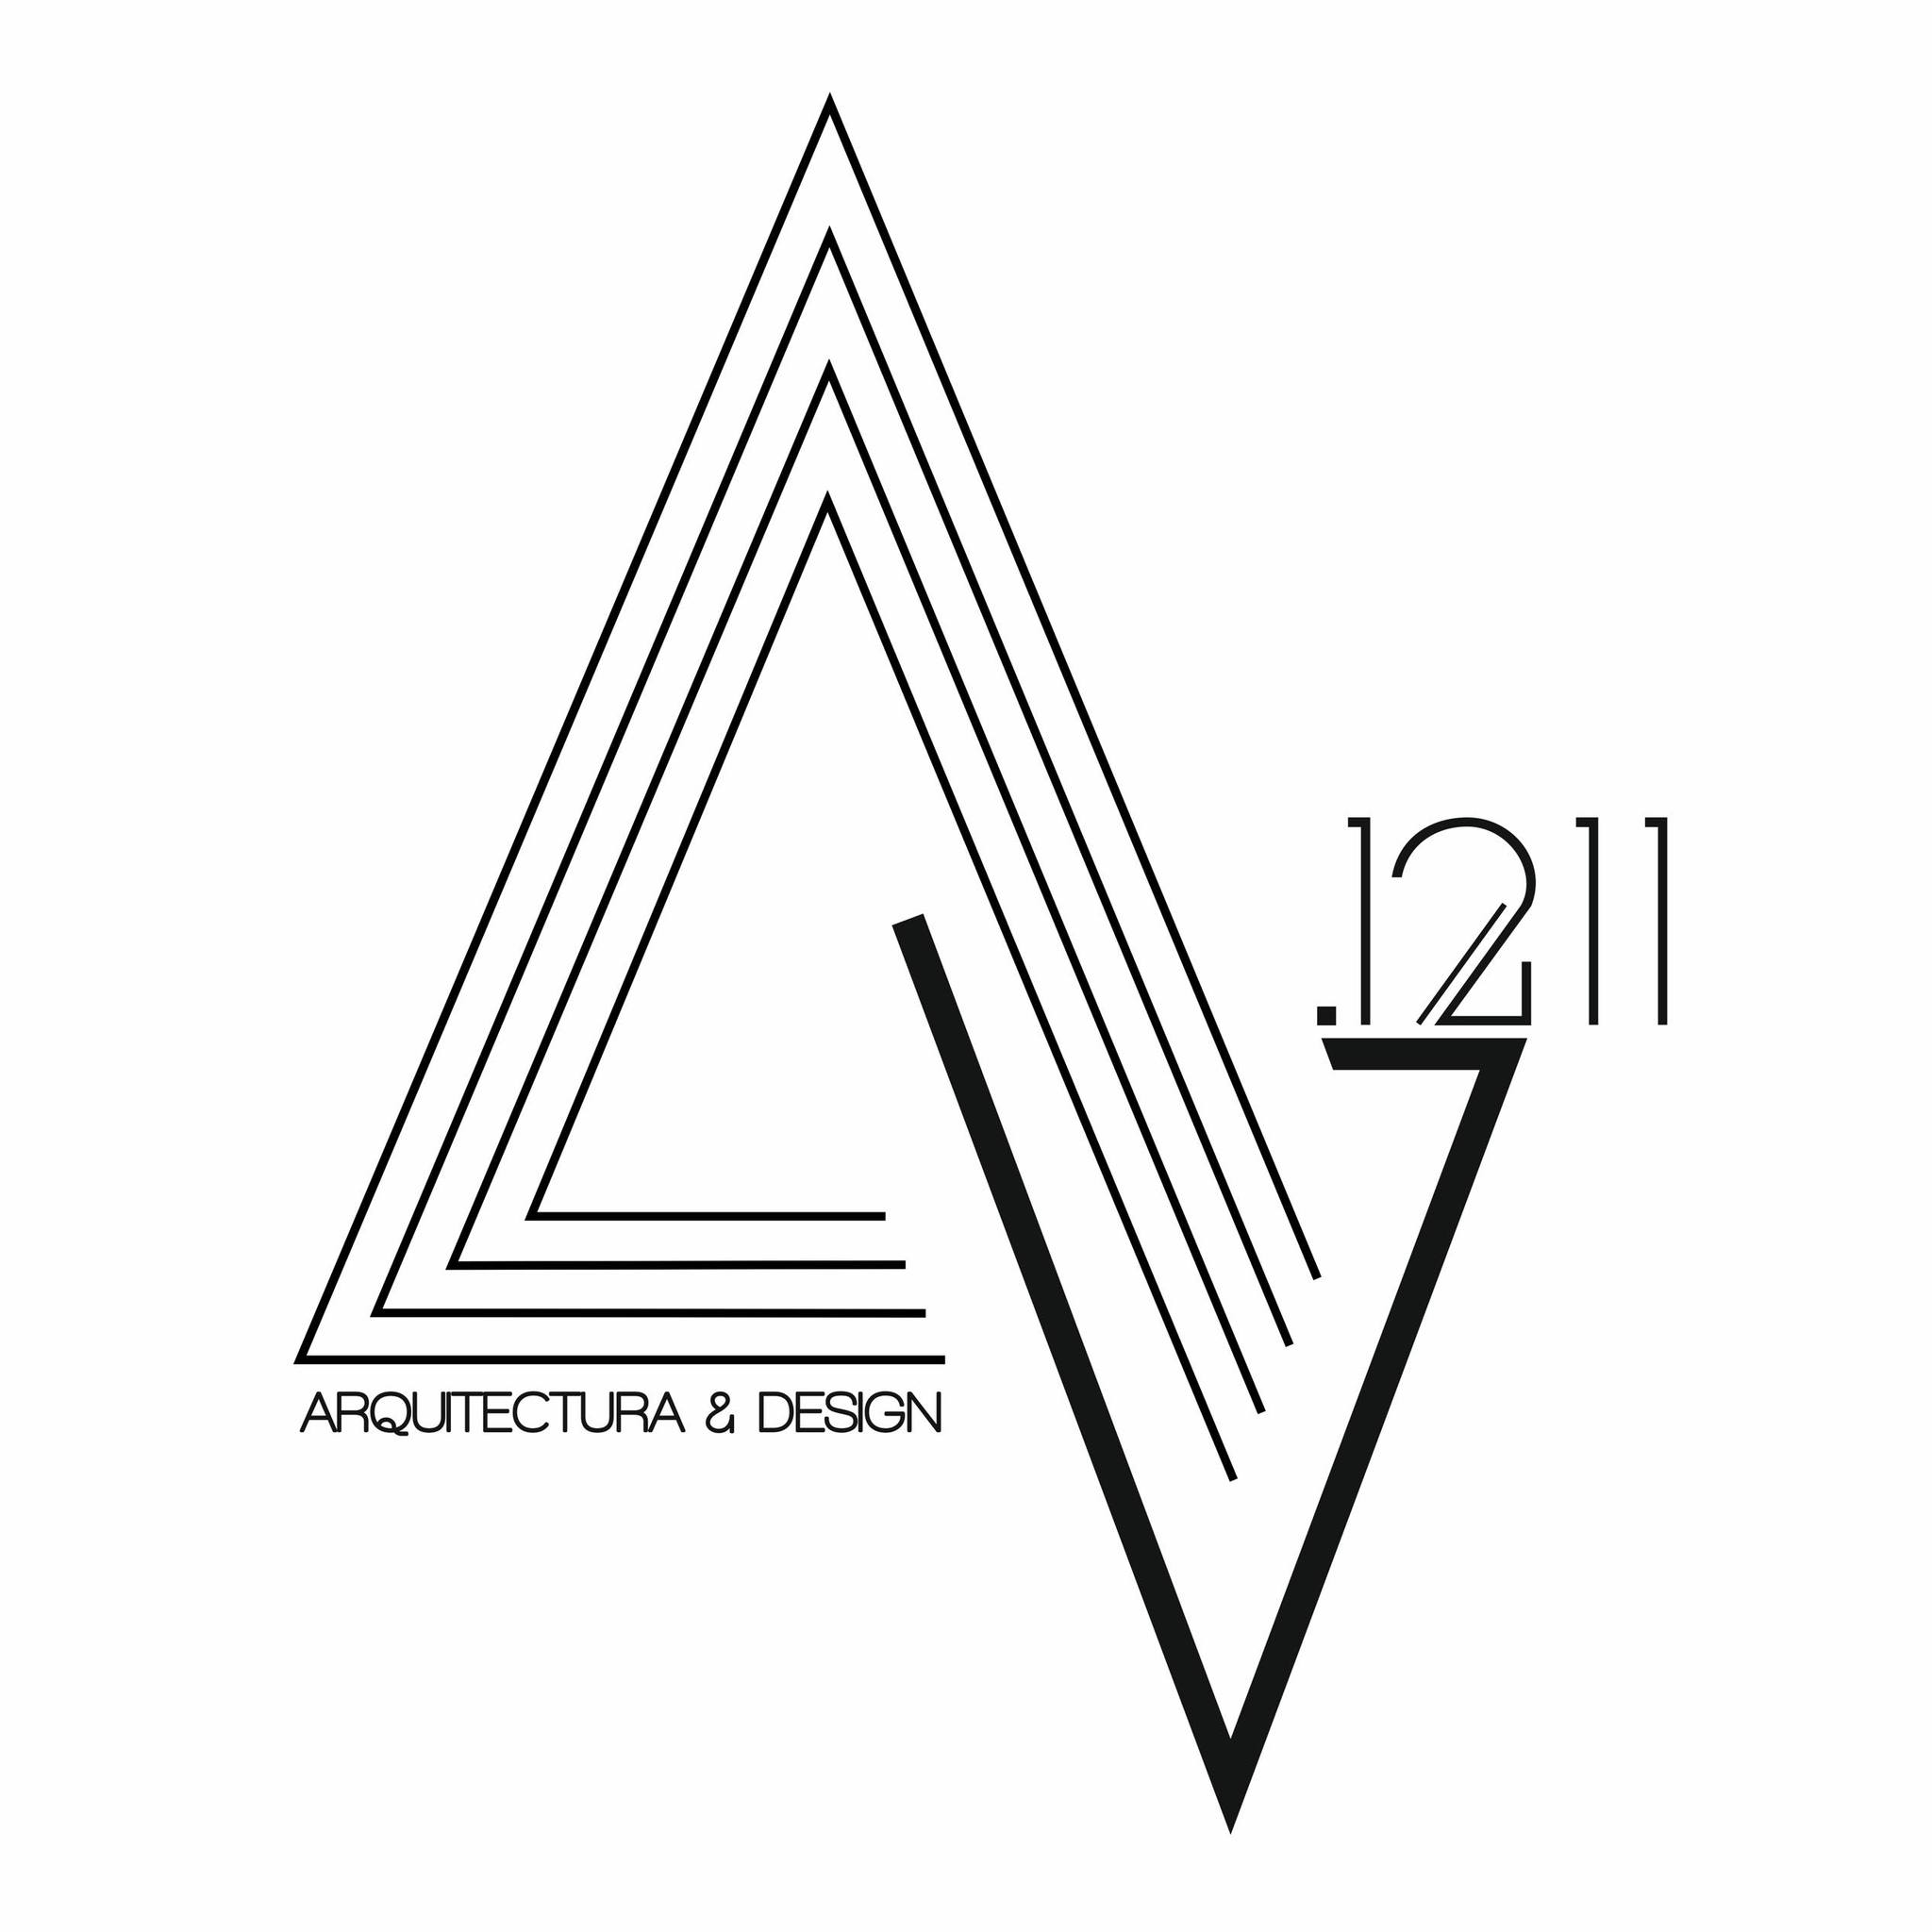 Atelier A.1211 — Arquitectura & Design